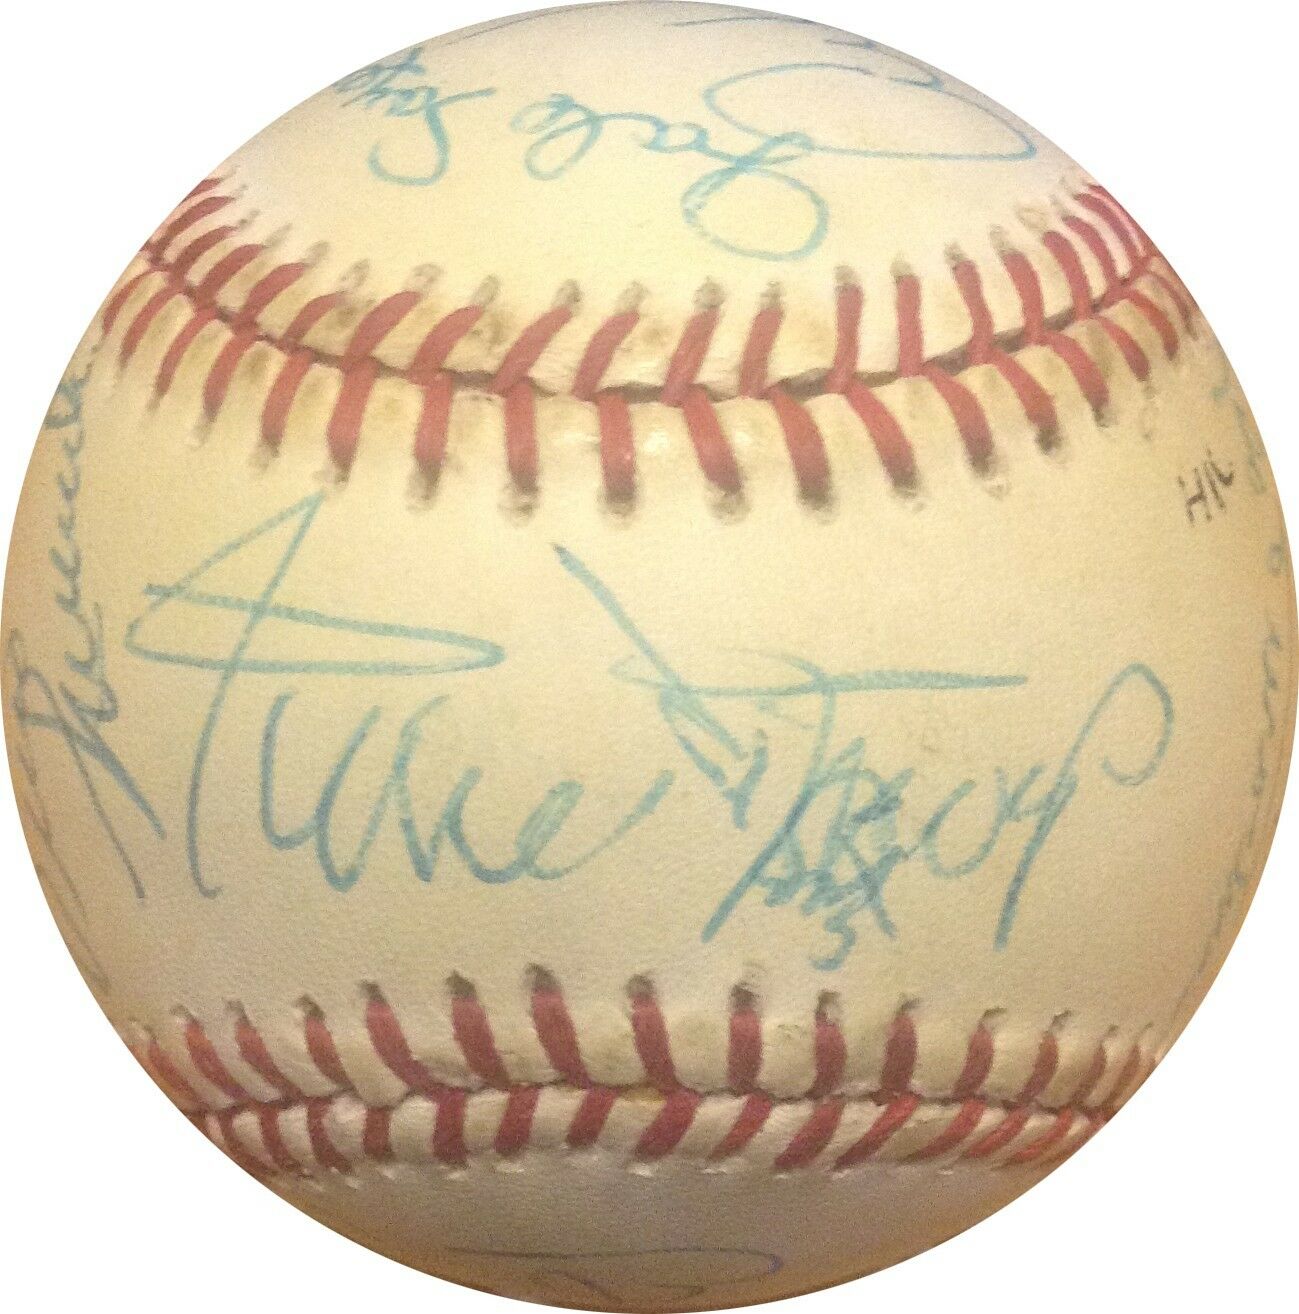 ballys MVP 1983 HOF Multi Sport Baseball Signed 16 auto Willie Mays Frazier PSA